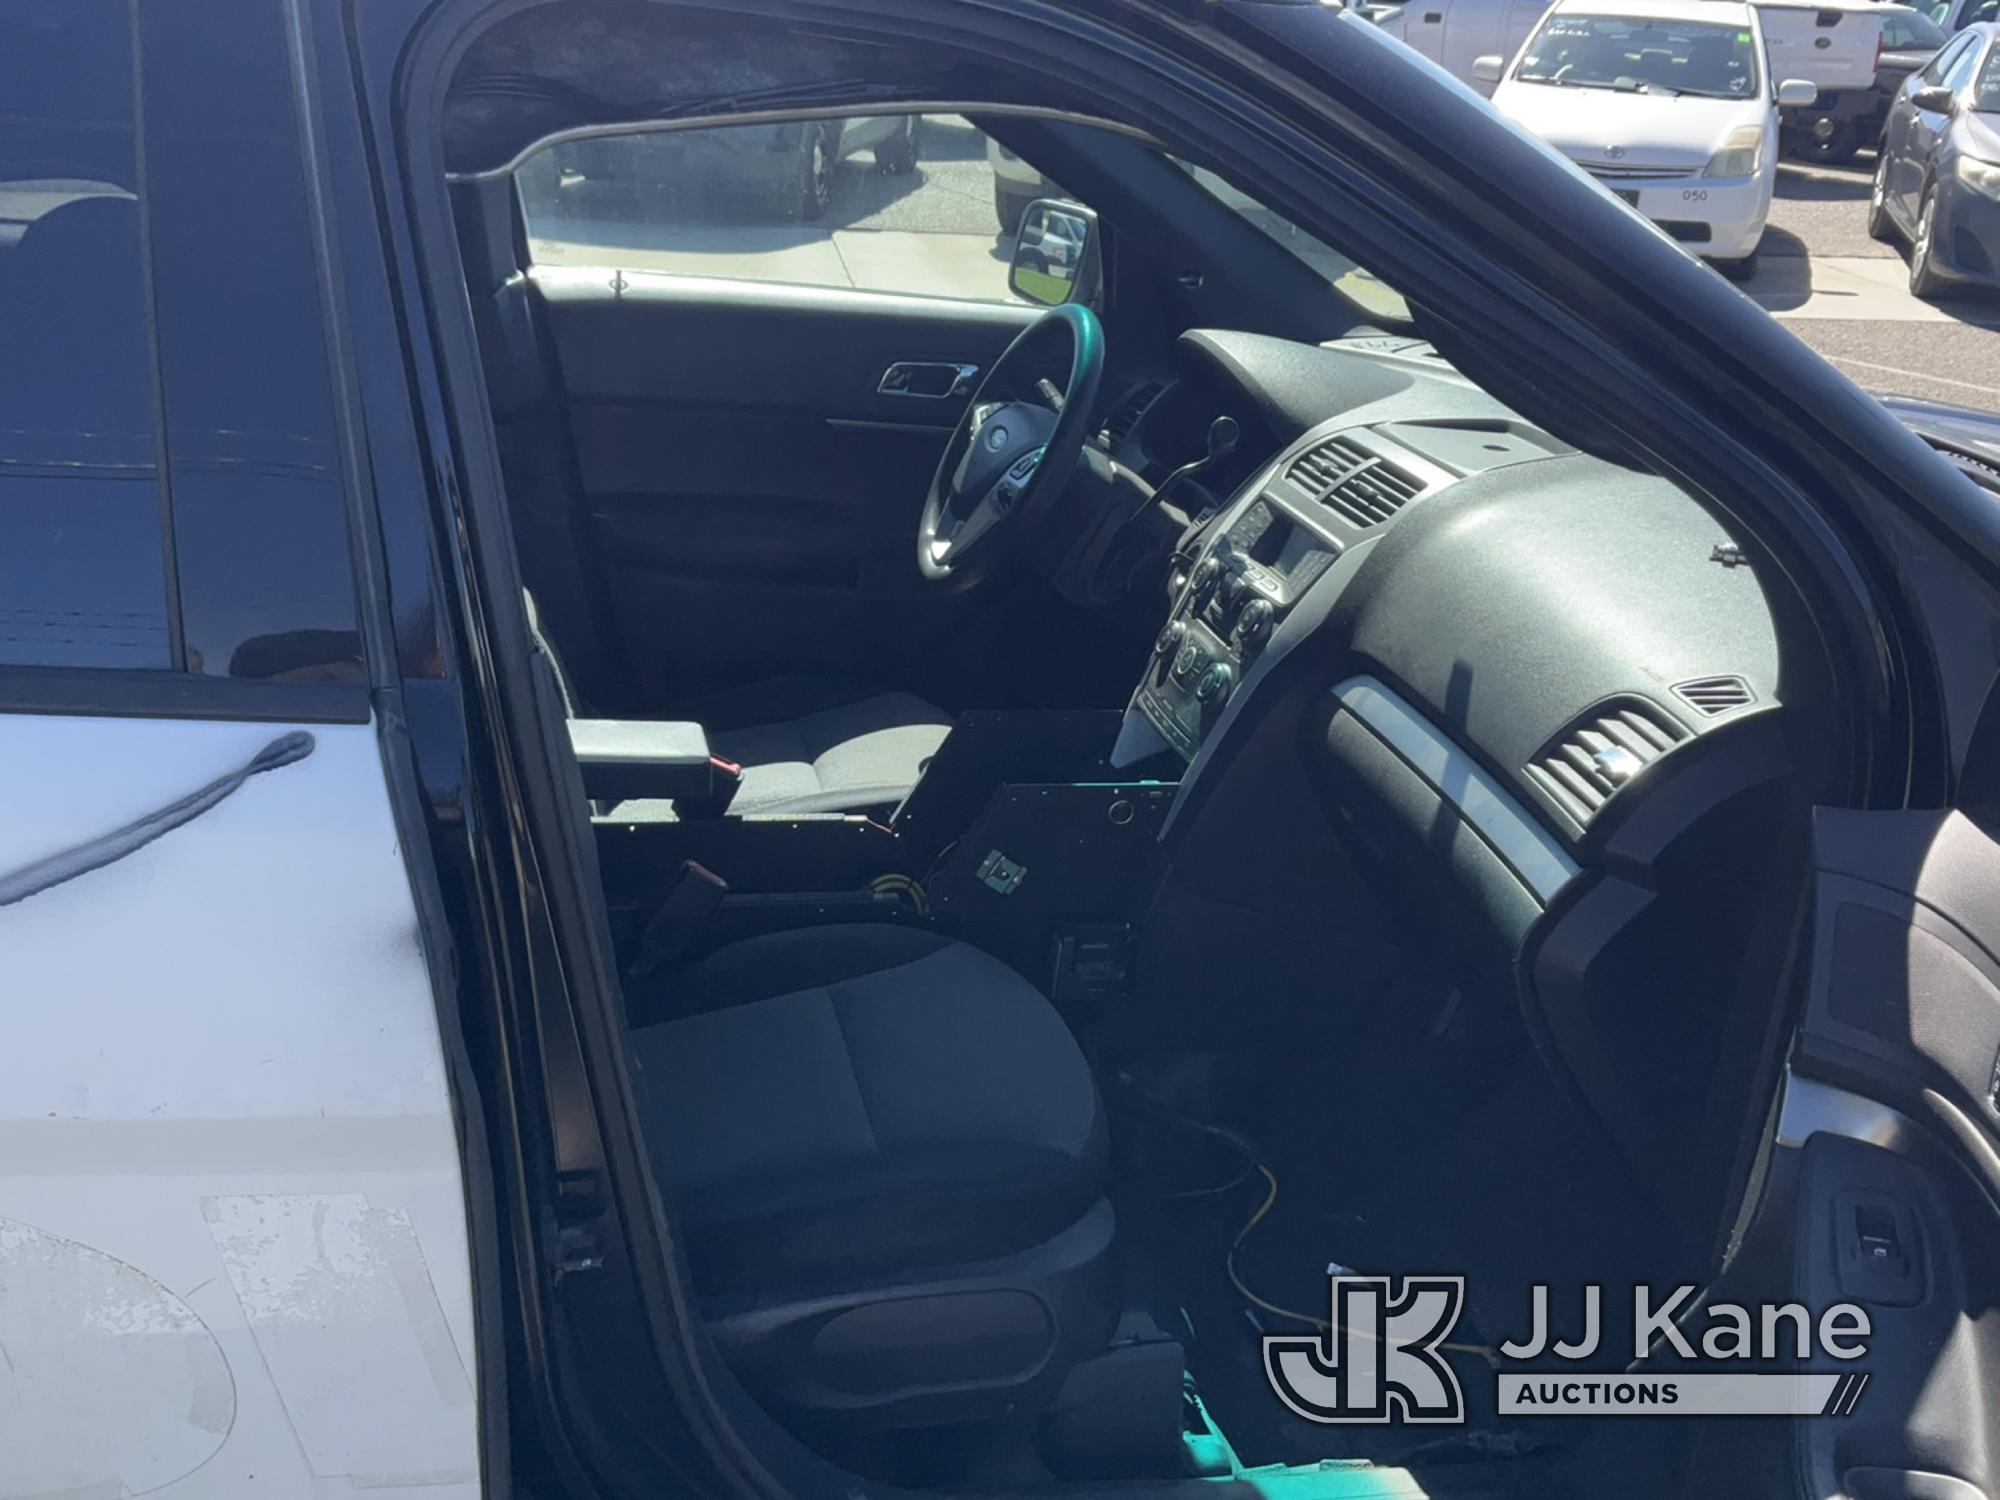 (Dixon, CA) 2014 Ford Explorer 4x4 4-Door Sport Utility Vehicle Runs & Moves)(No Rear Seats or Belts